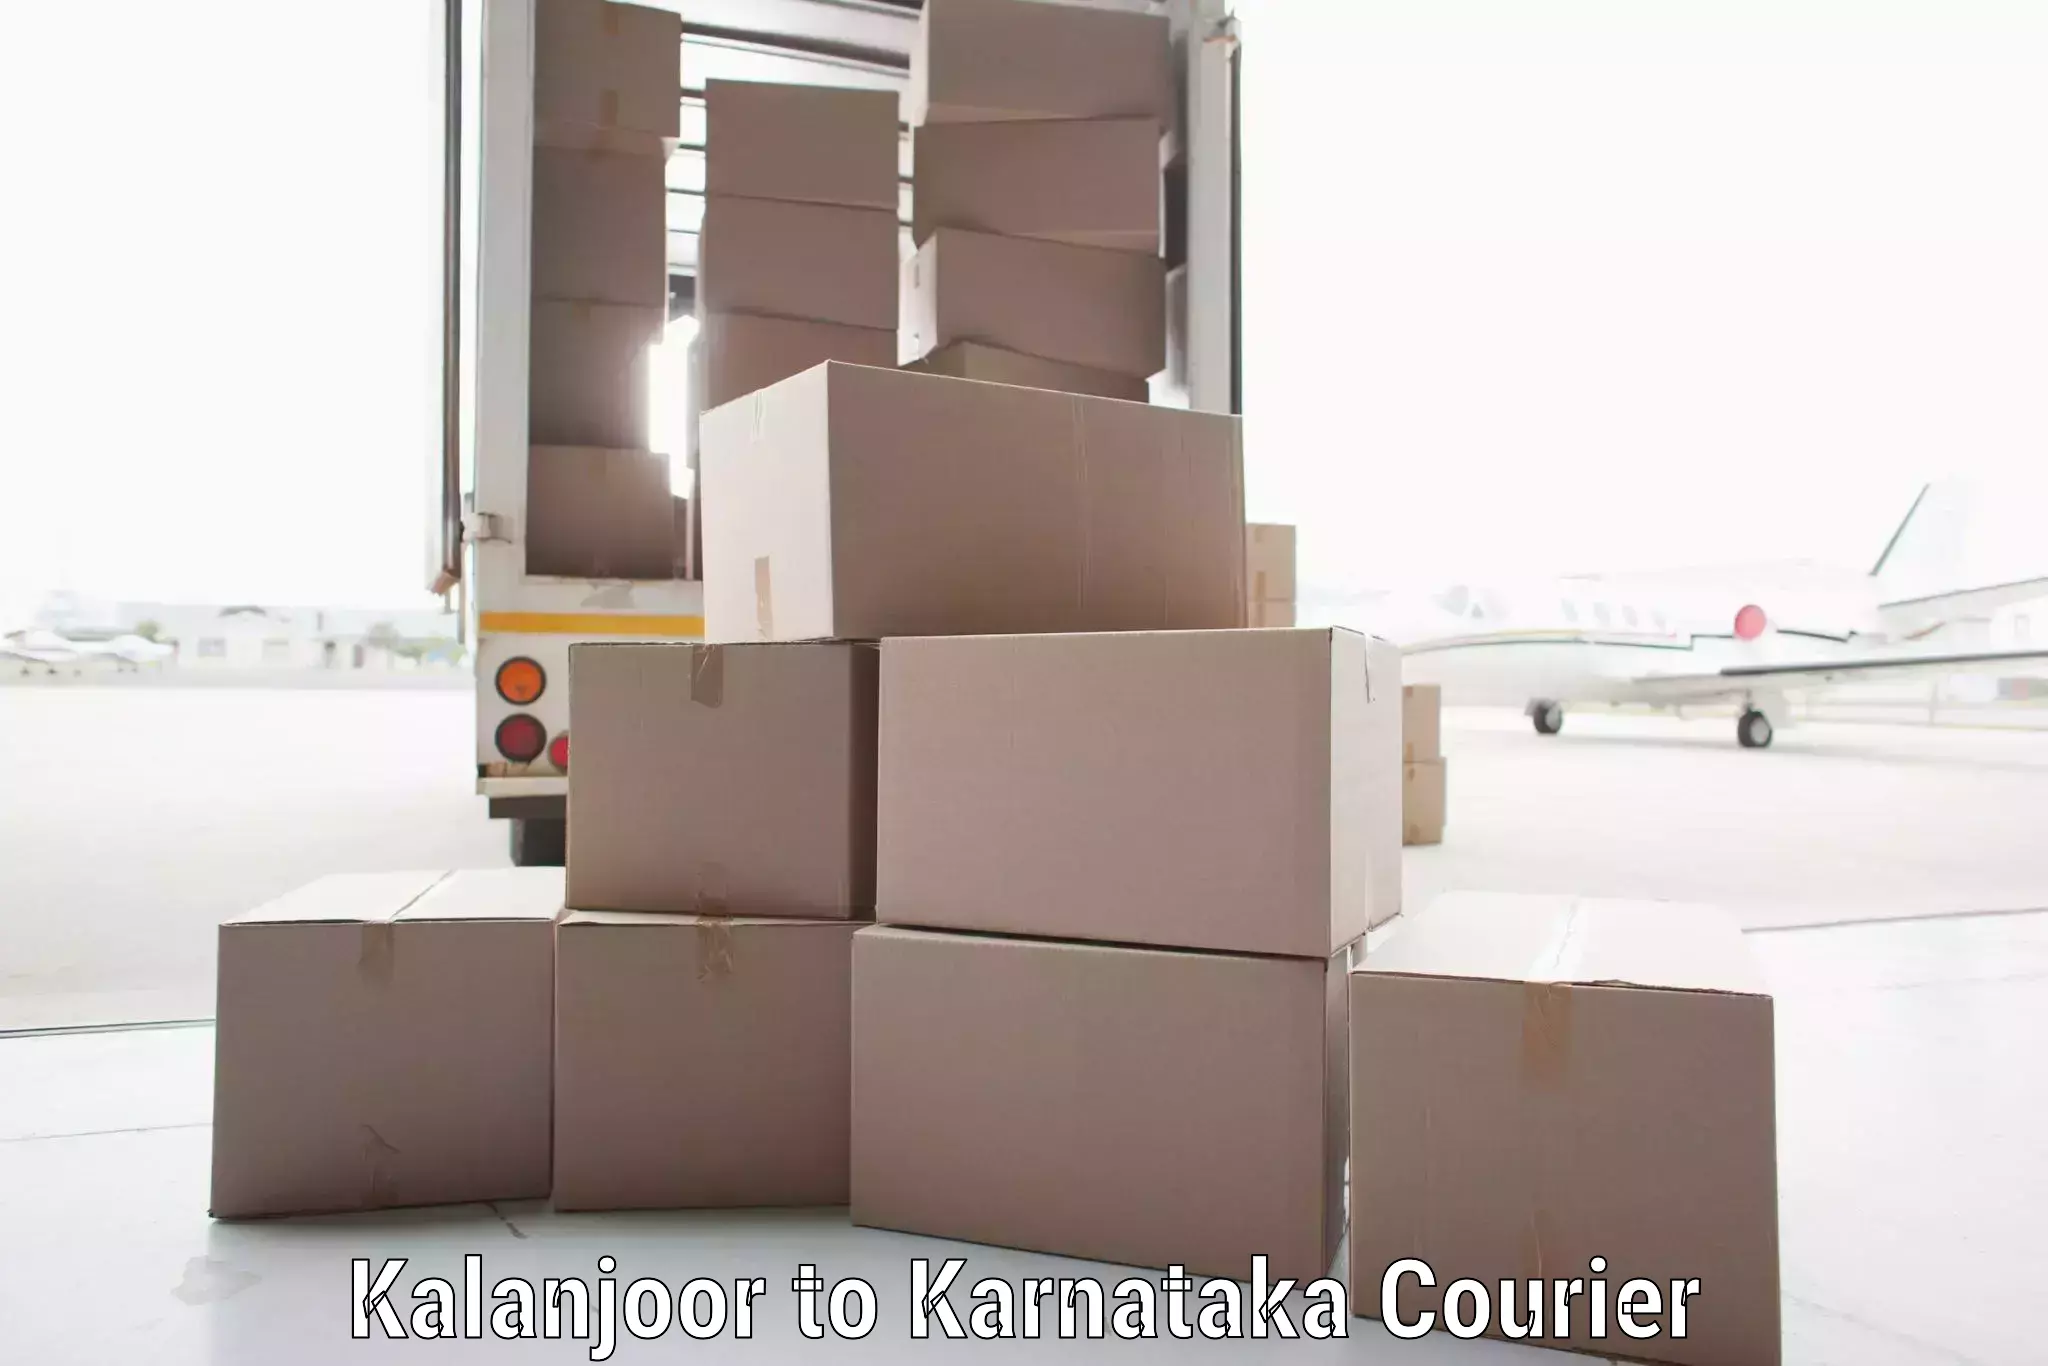 Nationwide parcel services Kalanjoor to Kolhar